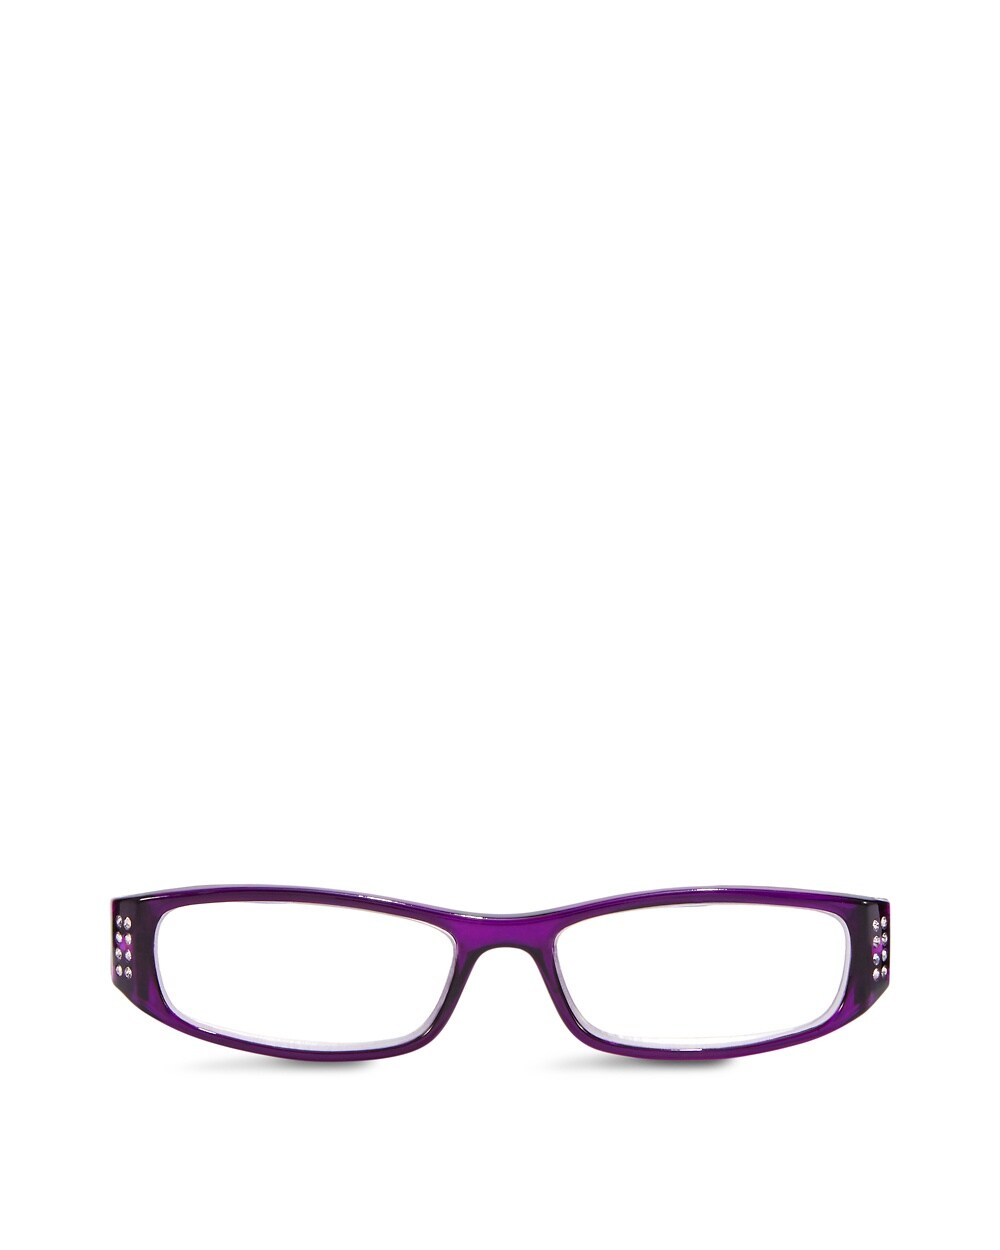 Aviva Reader Glasses